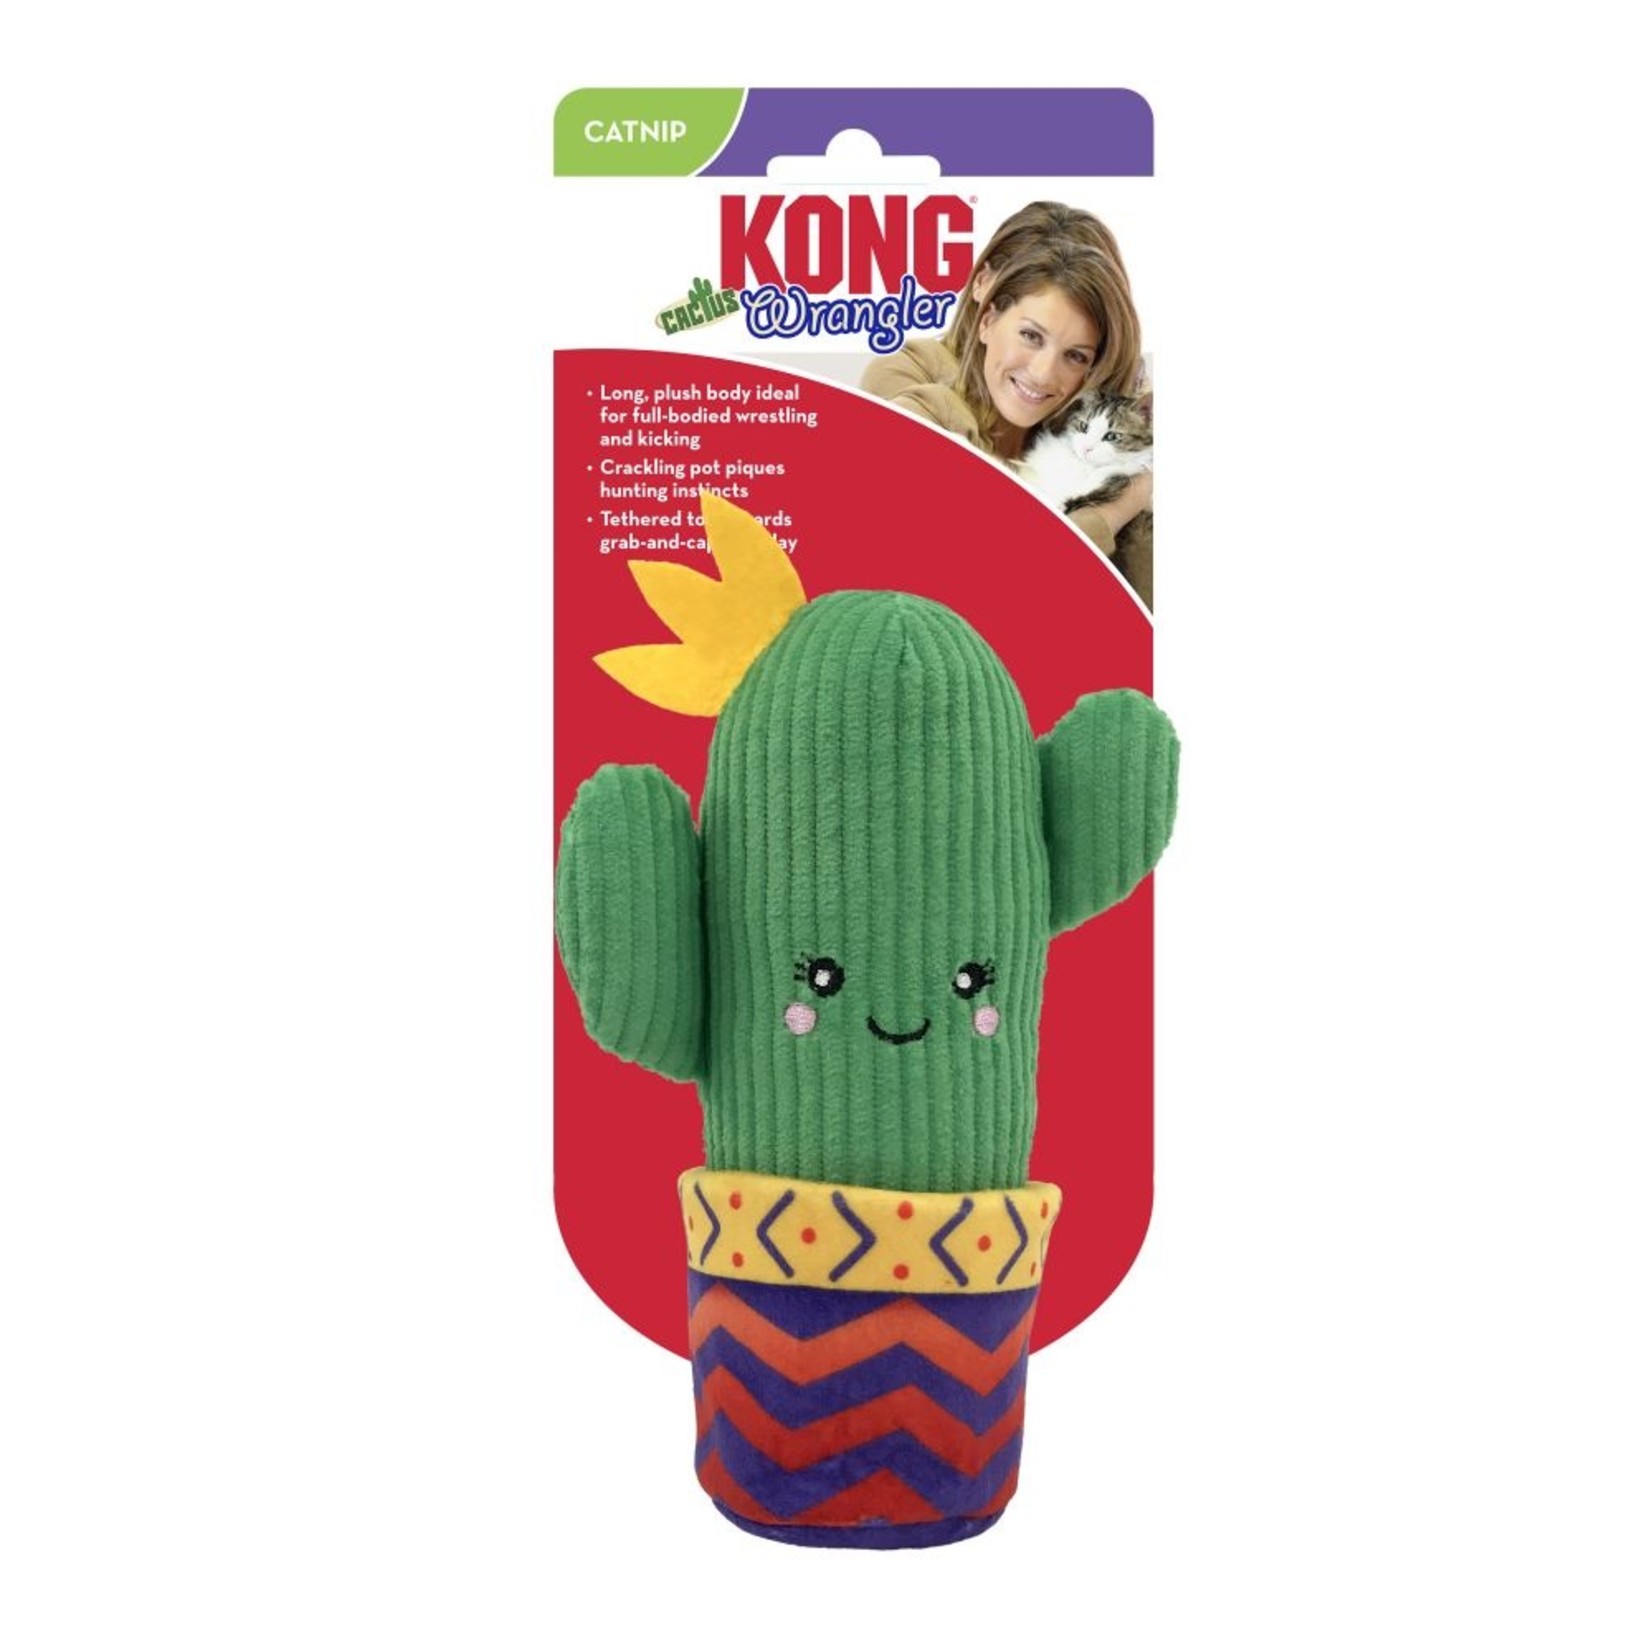 Kong Kong cactus cat toy